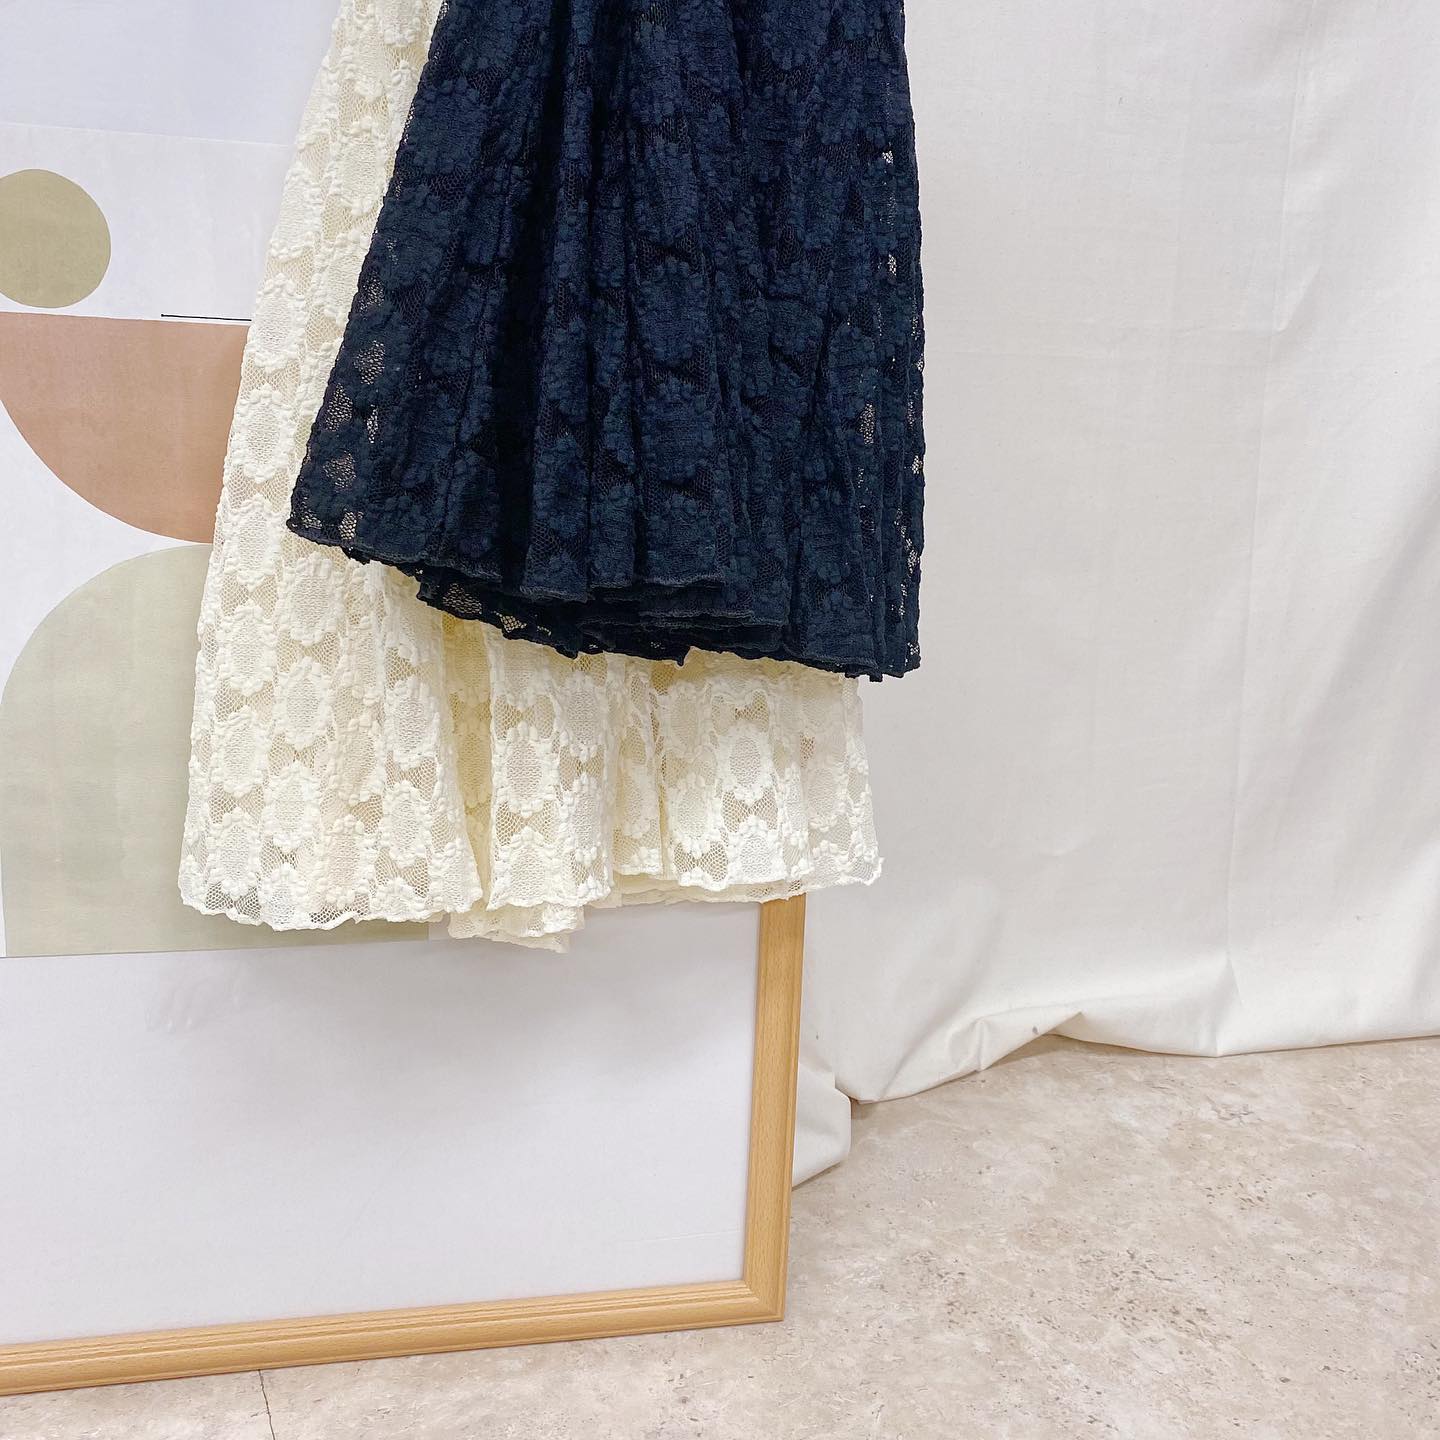 .﻿﻿﻿︎flower lace skirt﻿ ¥5,390﻿﻿﻿来週末に順次店舗入荷🧺﻿詳しくはお近くの店舗まで。﻿﻿オンライン予約開始しました♡﻿﻿﻿﻿﻿﻿﻿﻿#ur_melty #ユアメルティ﻿#レーススカート #マーメイドスカート﻿#レーススカートコーデ #スカートコーデ﻿#春コーデ #韓国ファッション #韓国風﻿#오오티디 #데일리룩 #패션 #패션스타그램 #옷스타그램﻿#일본패션 #유아멜티 #코디 #코디스타그램